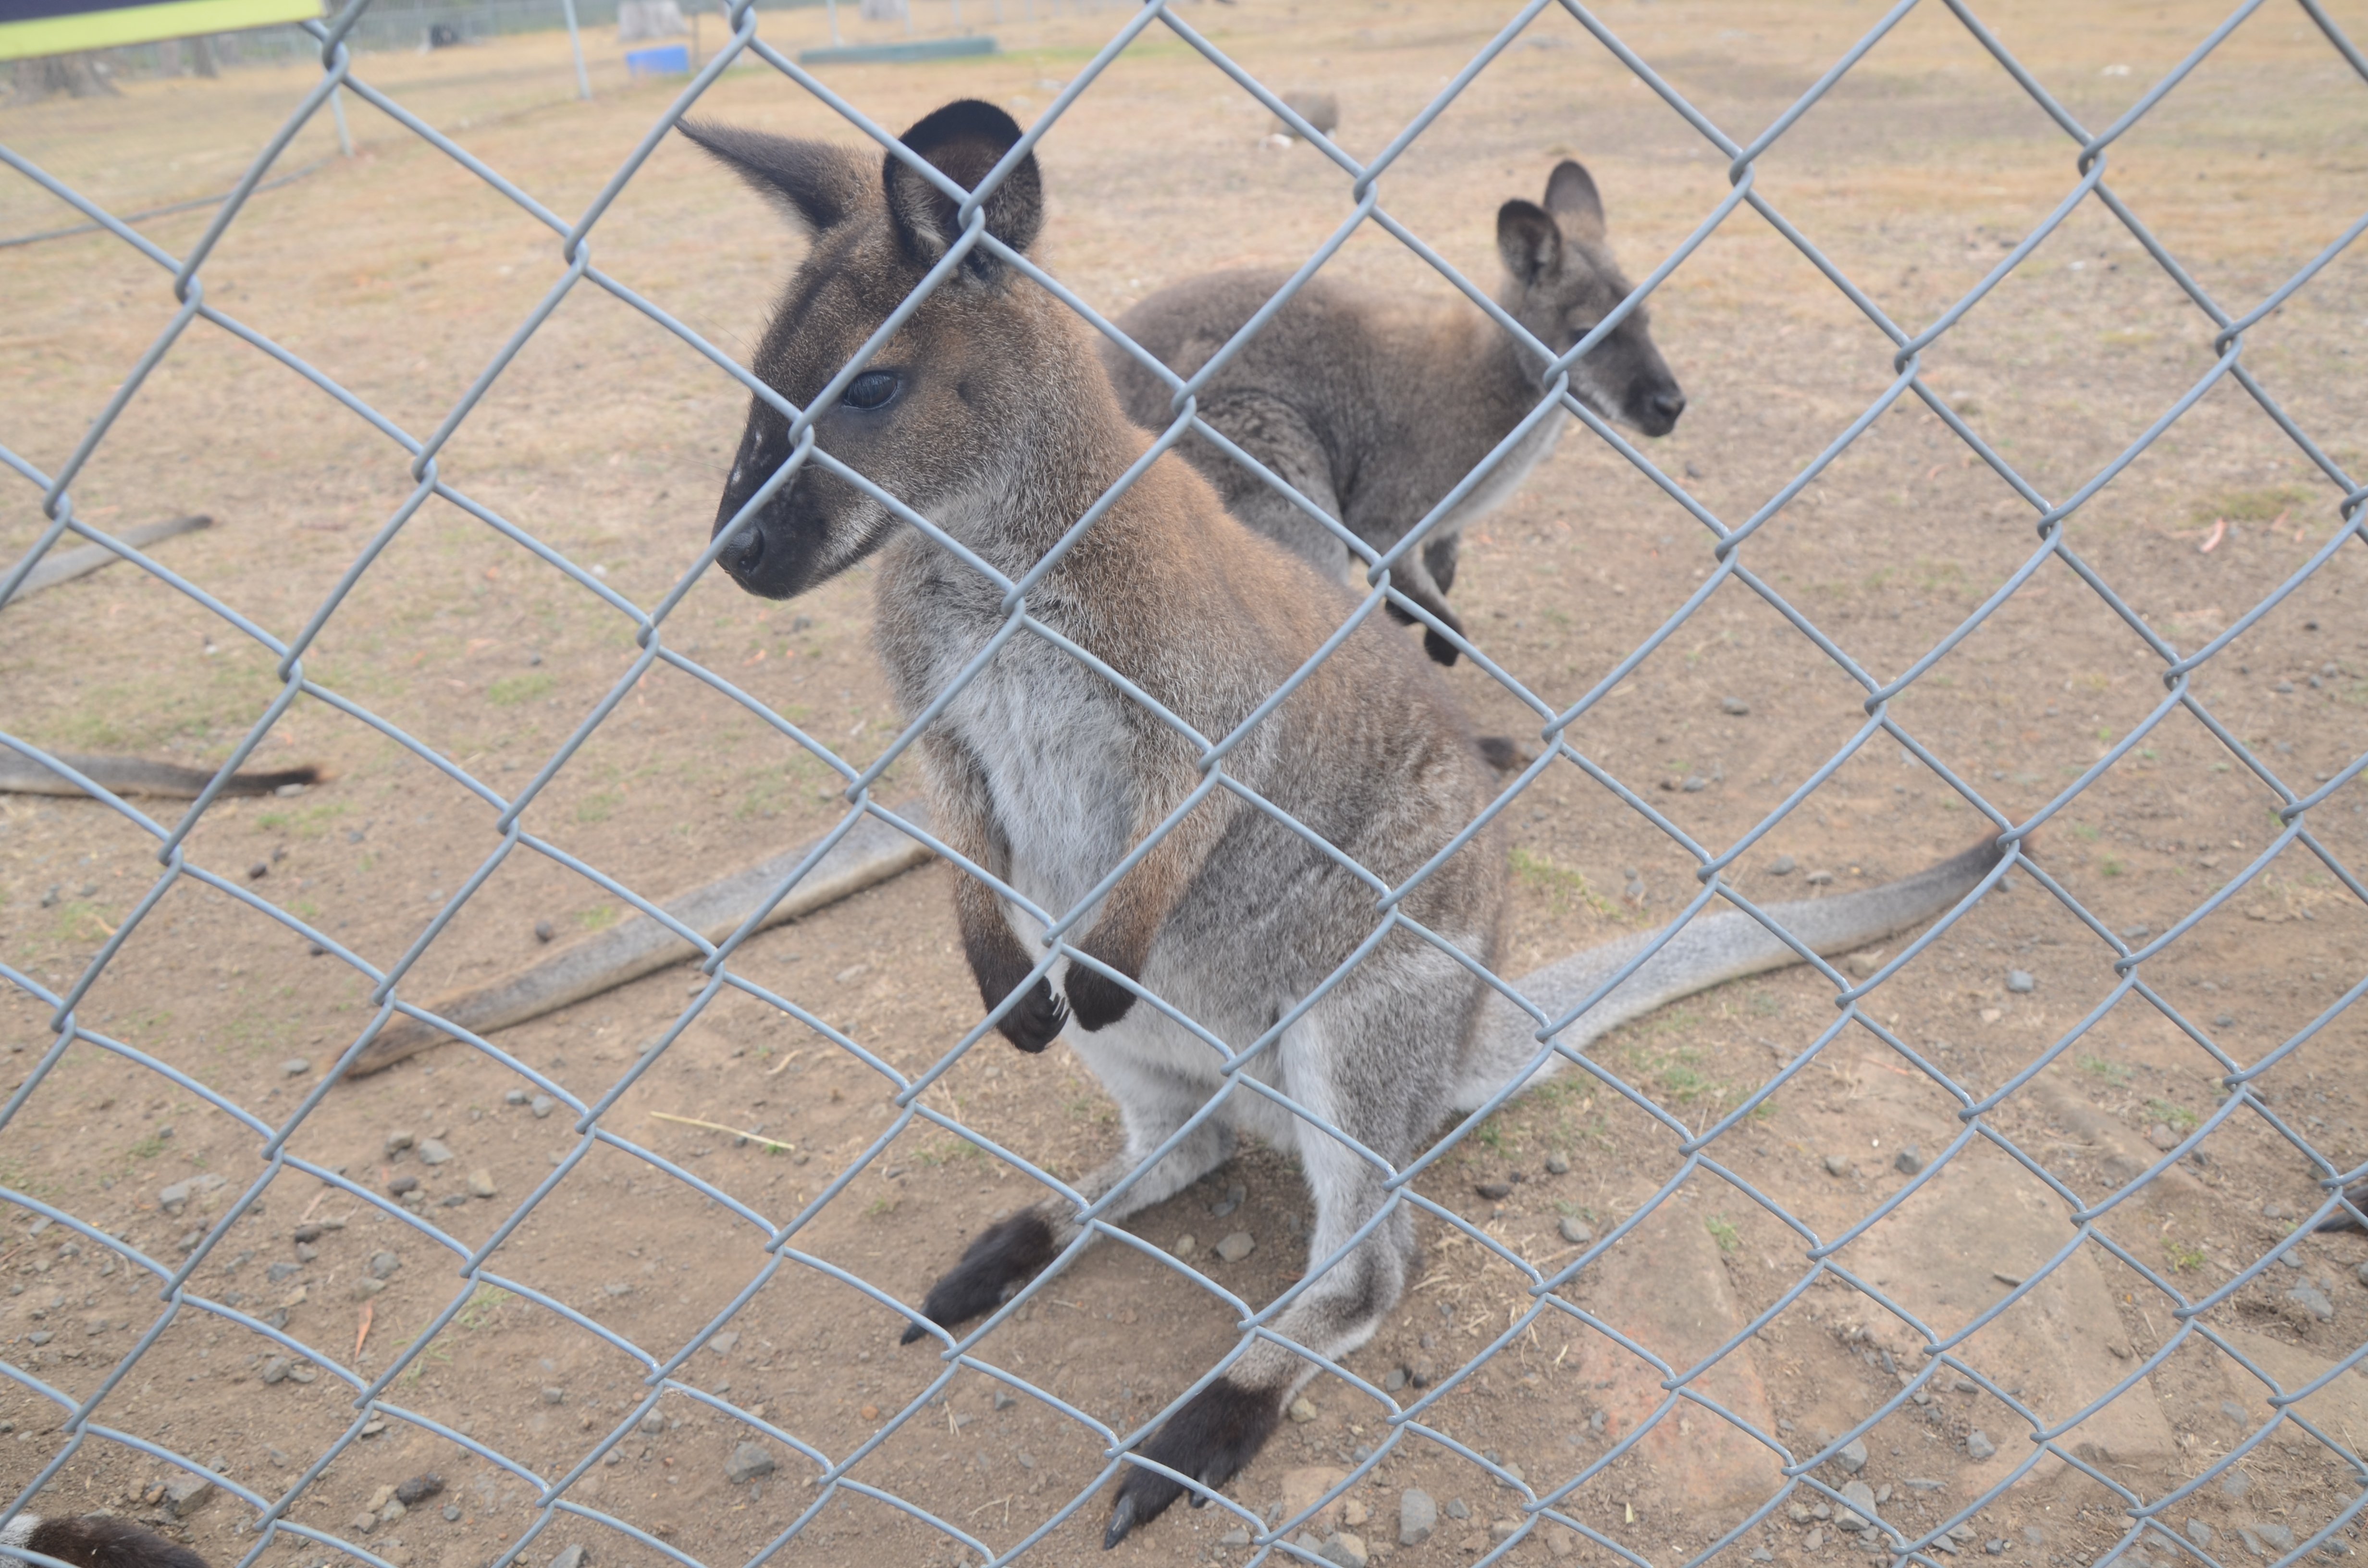 第六天，来到霍巴特动物园。这里有许多澳洲本土动物：考拉、袋鼠、袋獾、企鹅、侏儒绒猴、羊驼、鹦鹉以及许